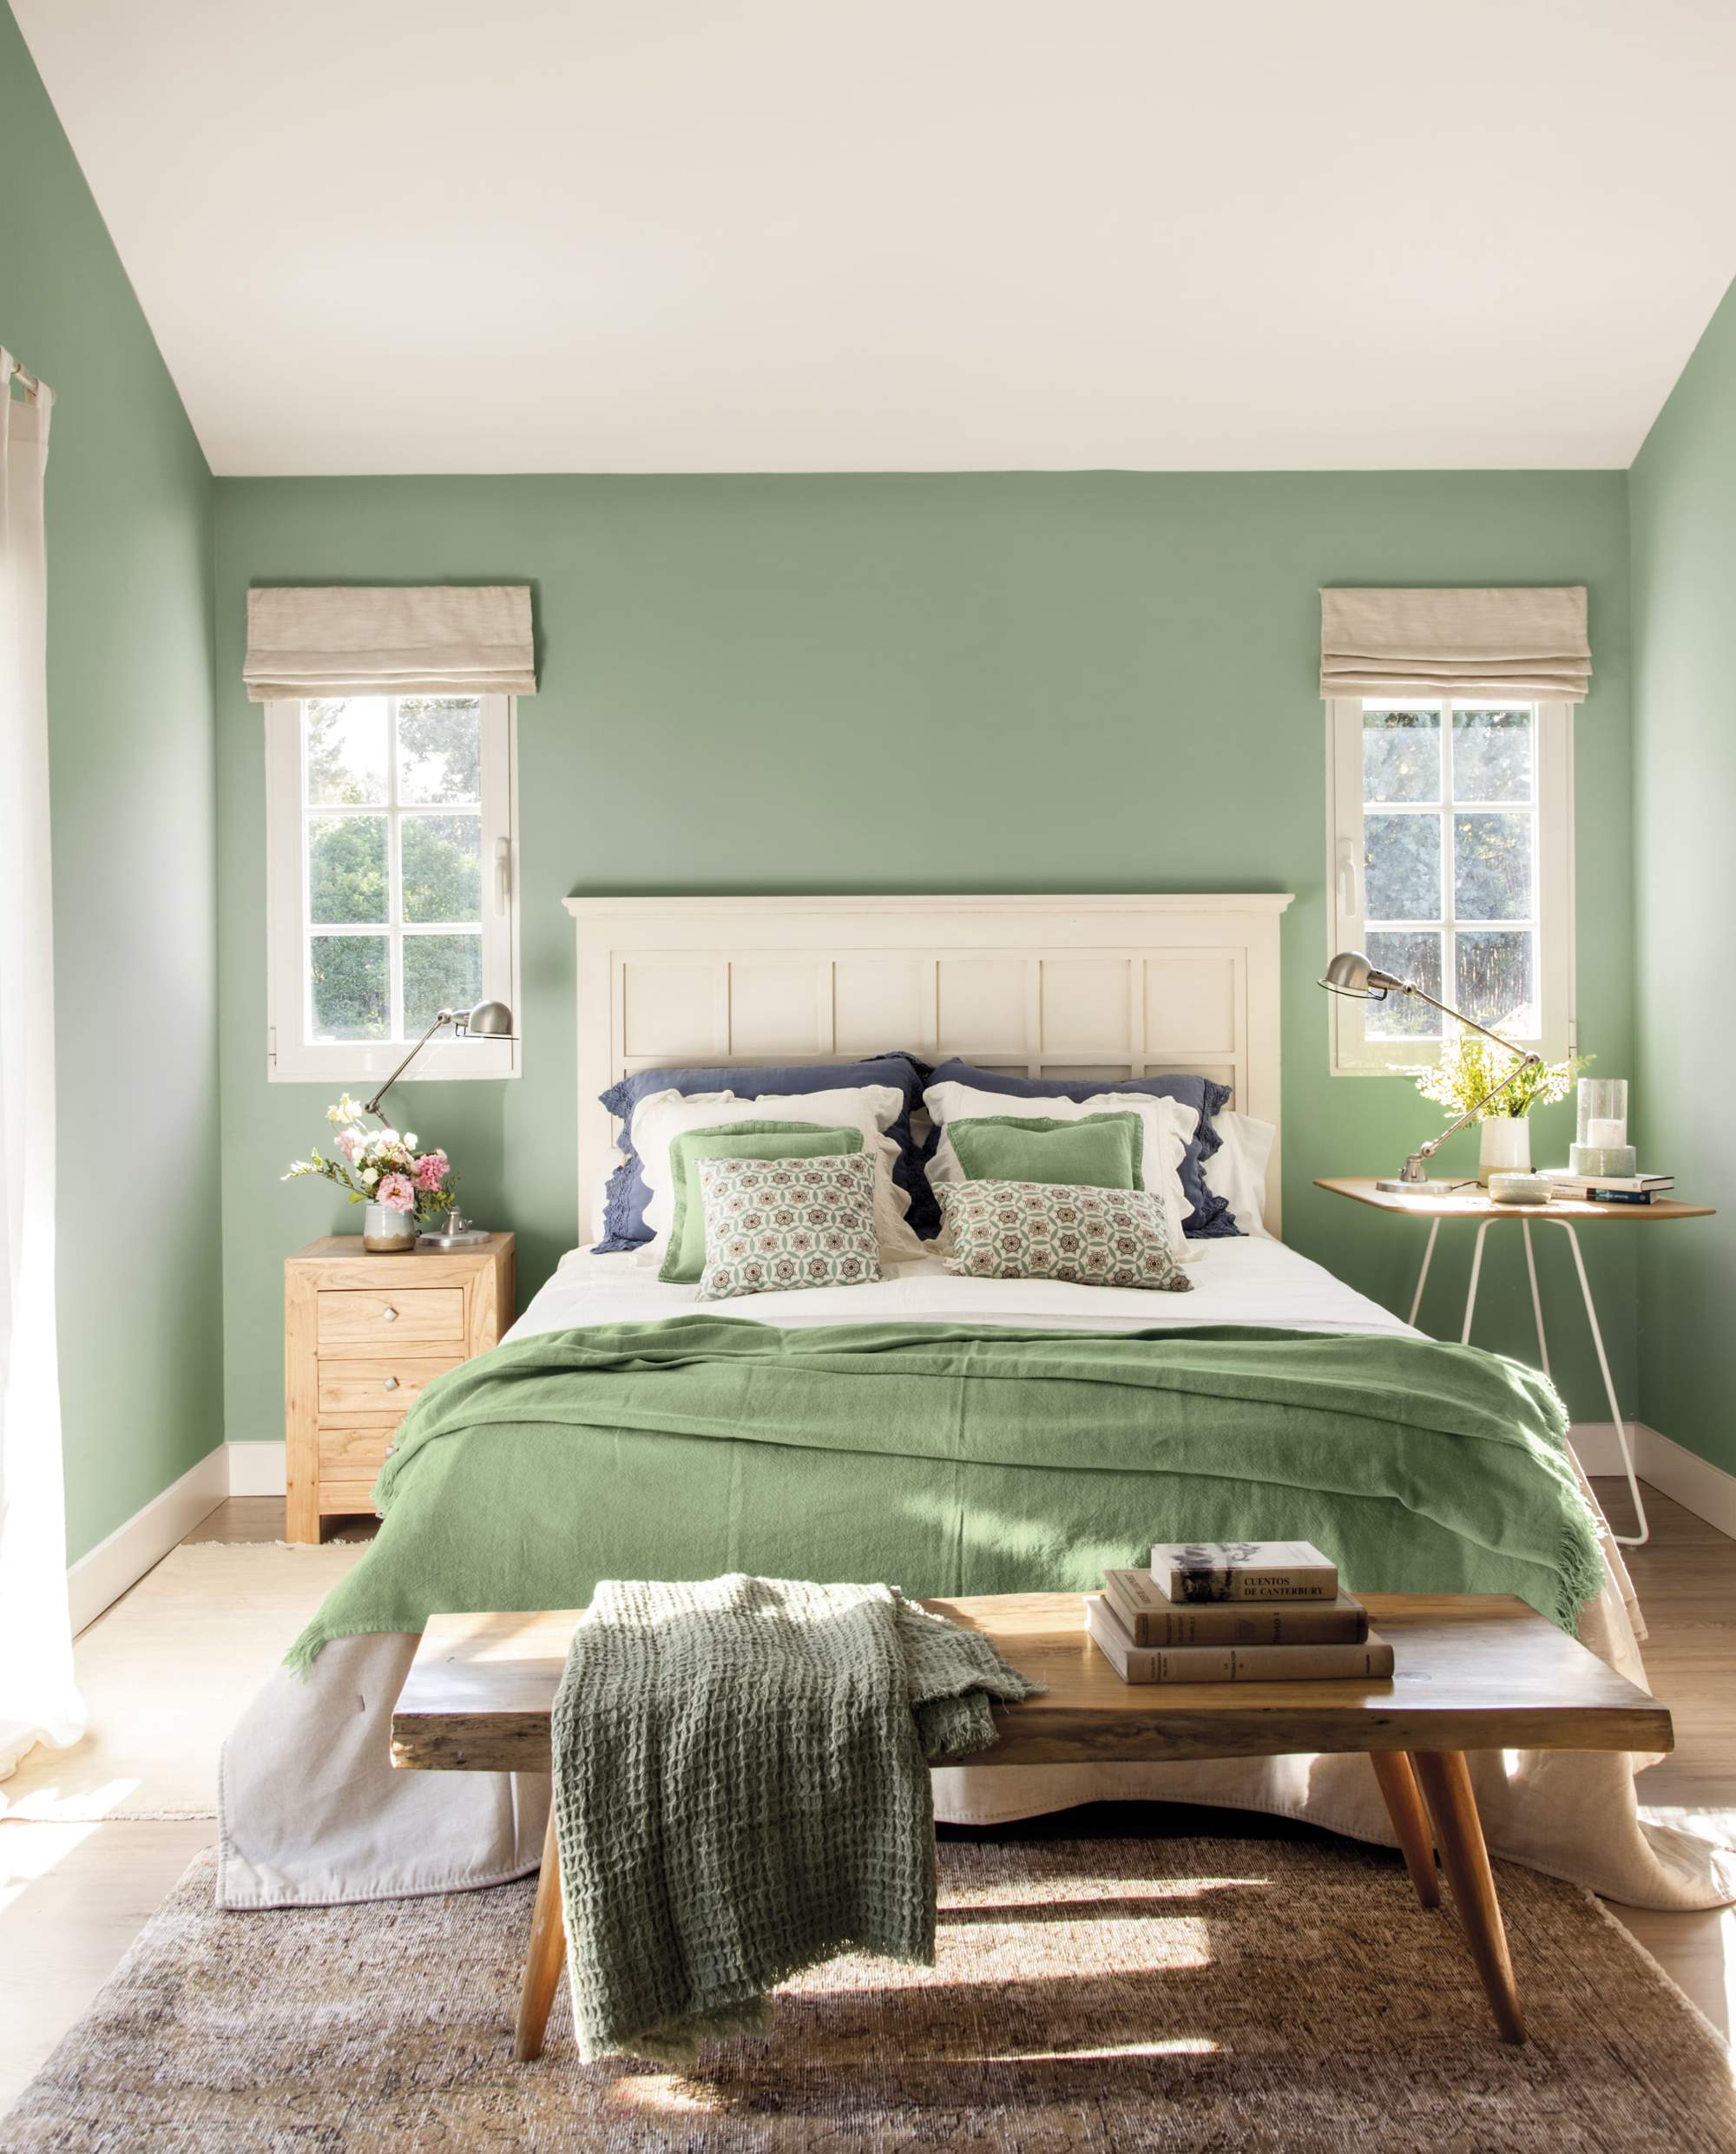 Cabecero blanco con friso decorativo en habitación de paredes verdes.